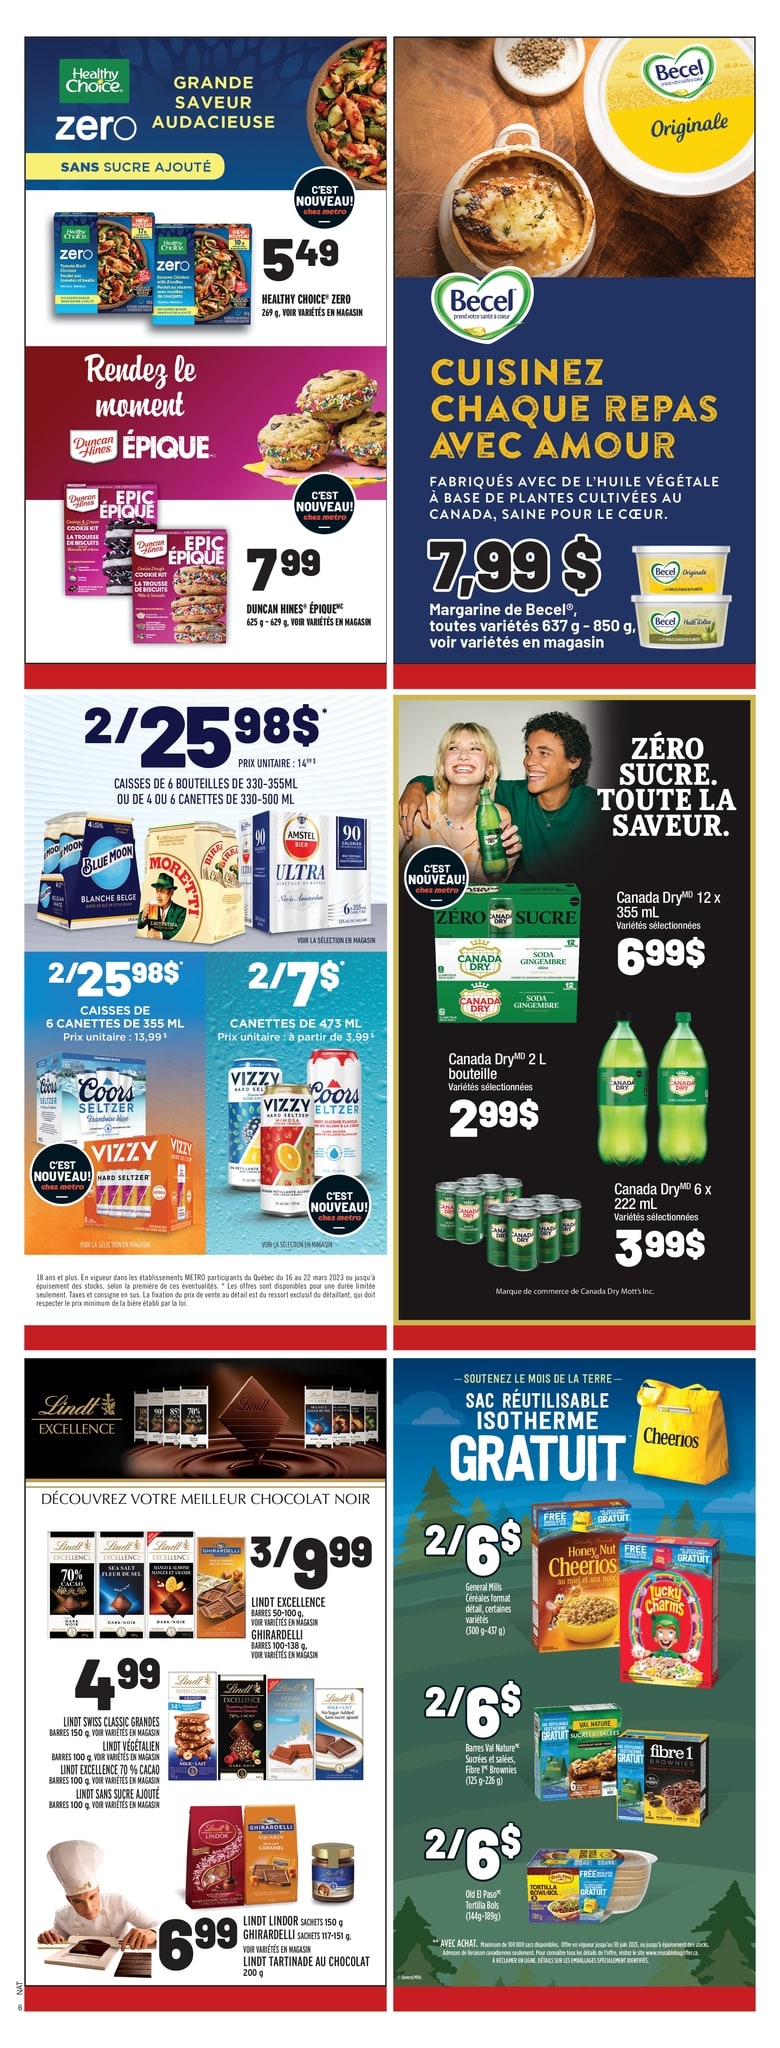 Metro - Quebec - Weekly Flyer Specials - Page 10